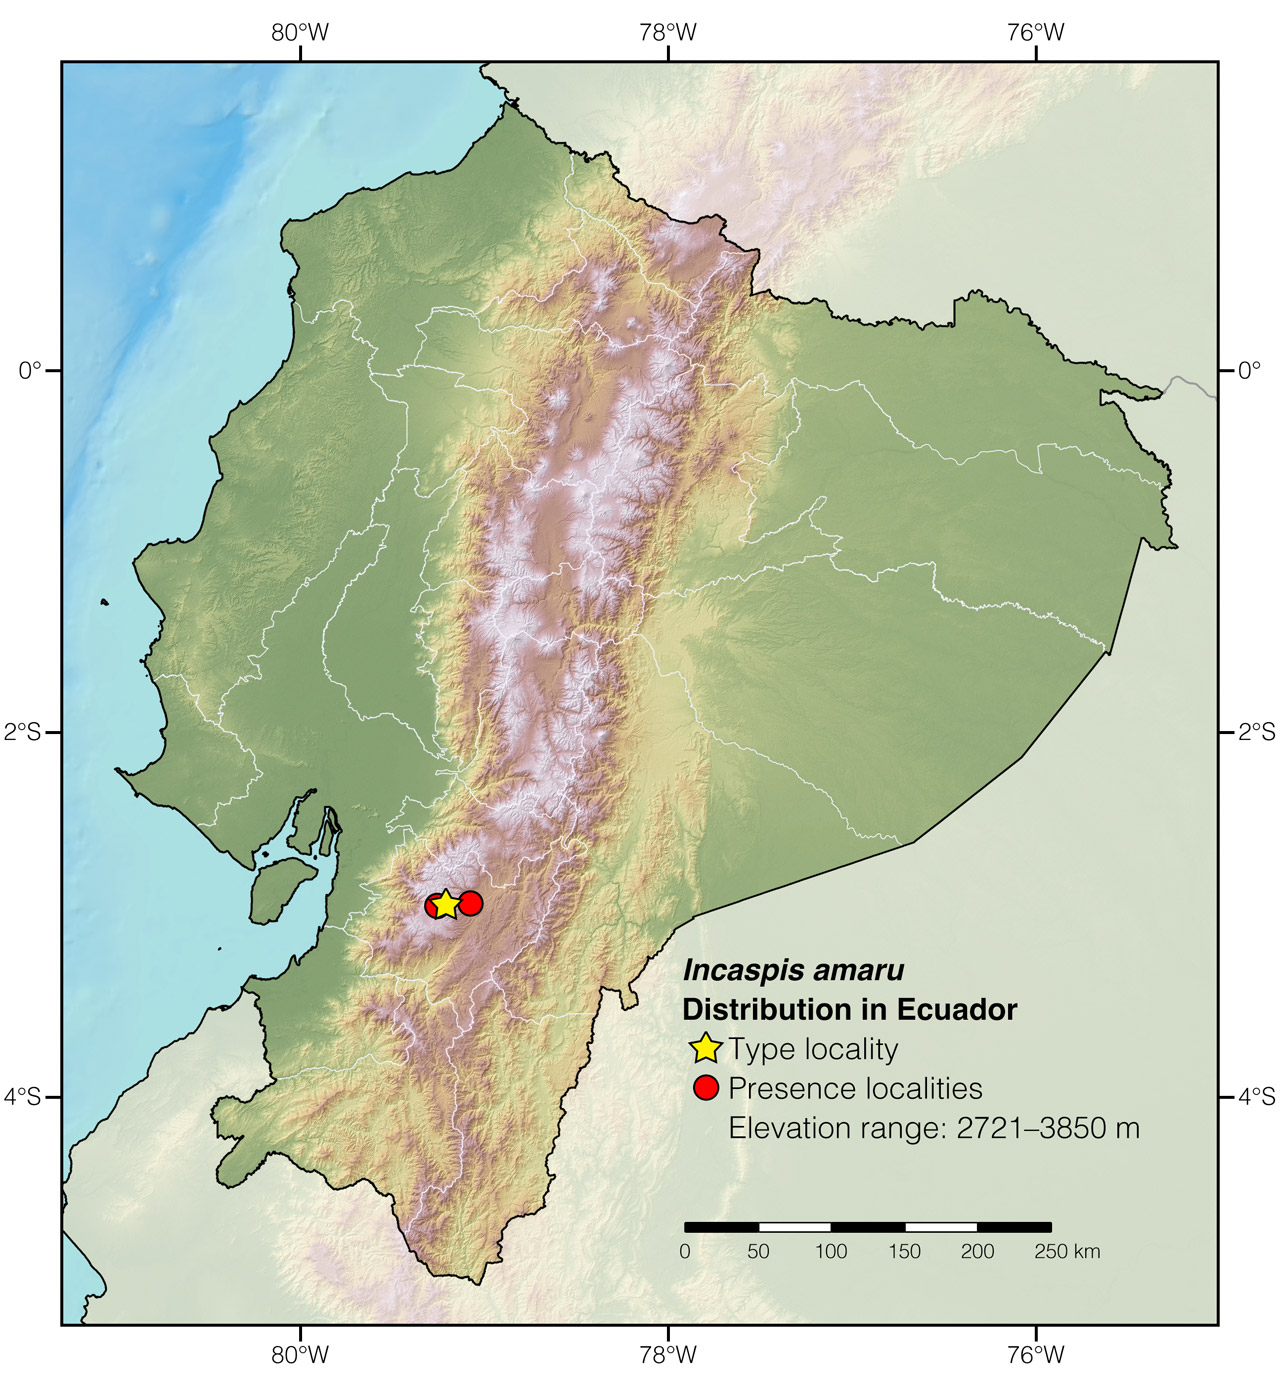 Distribution of Incaspis amaru in Ecuador